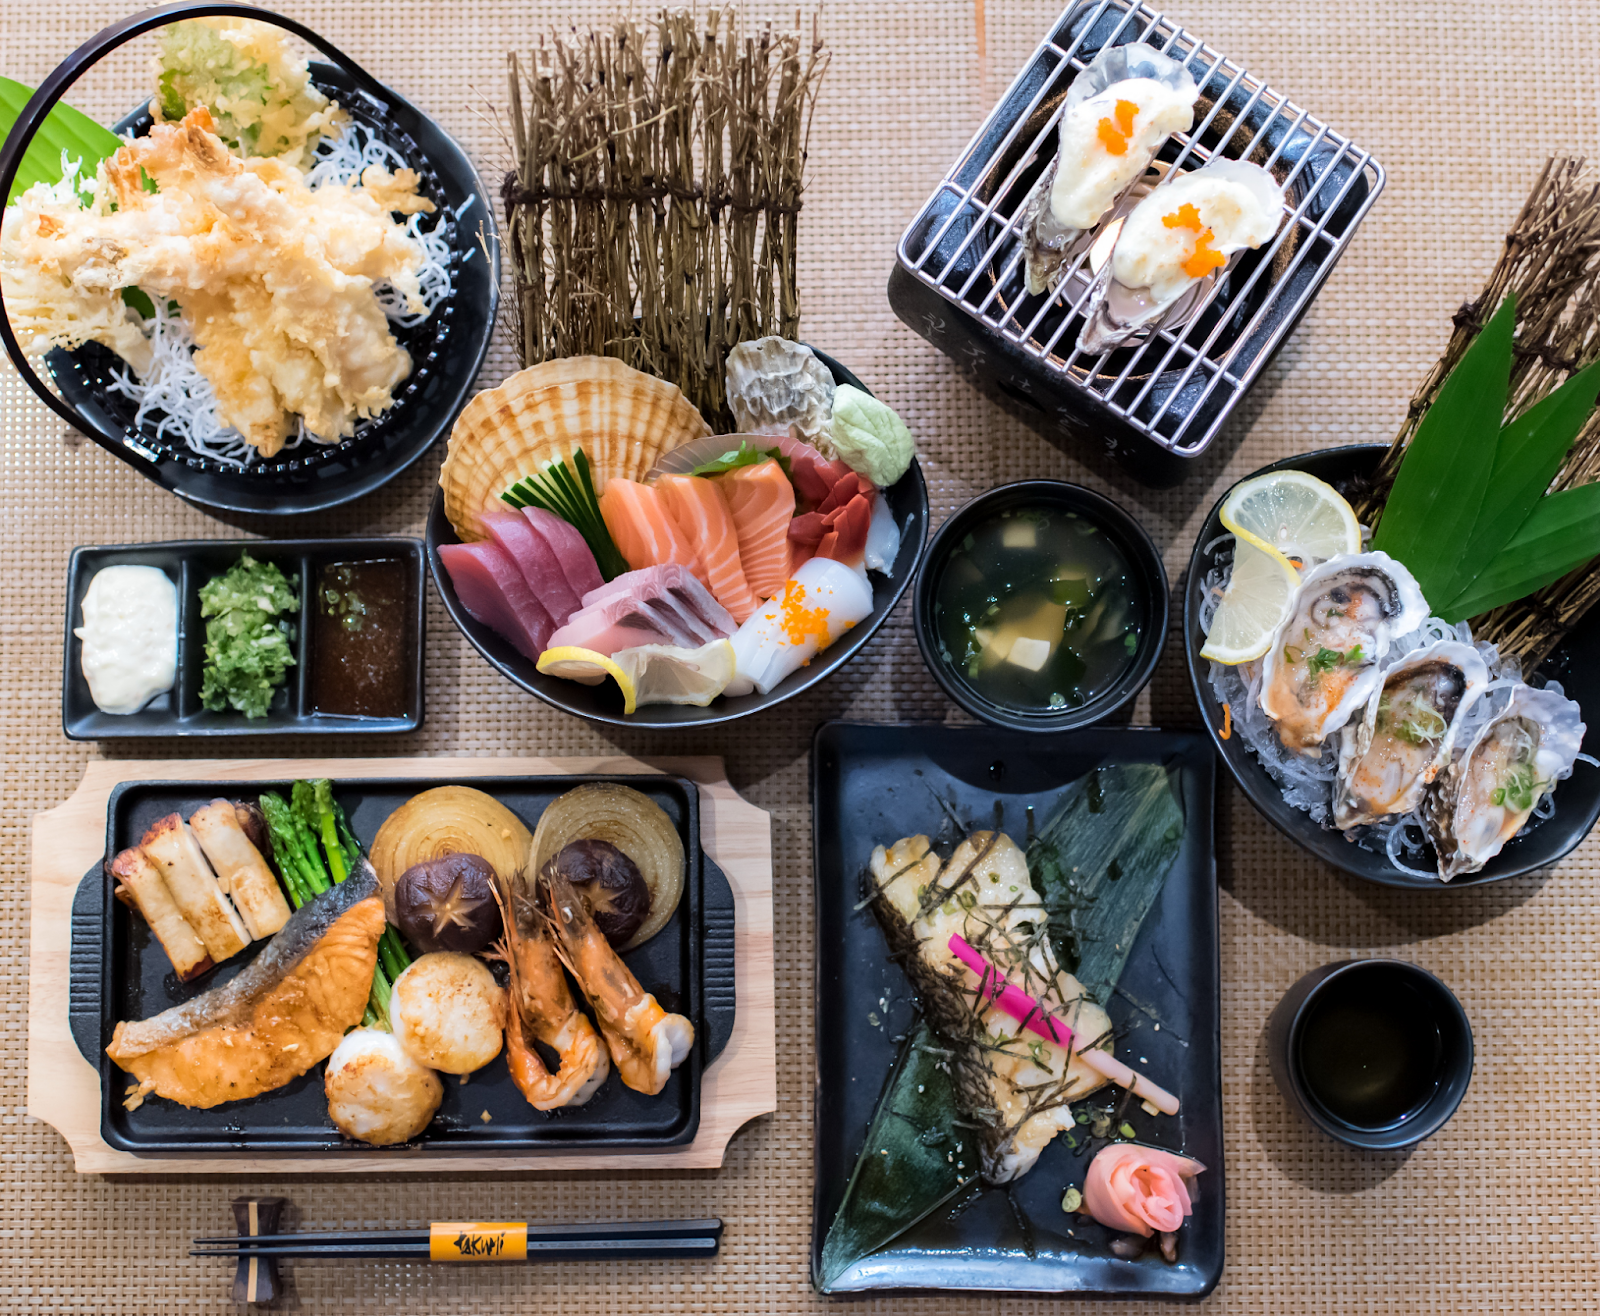 13 ร้านอาหารญี่ปุ่นแบบเป็นกันเอง ให้ความรู้สึกเหมือนไปเที่ยวบ้านเพื่อน แถมยังมาในราคาที่แสนจะเป็นมิตร EP.215